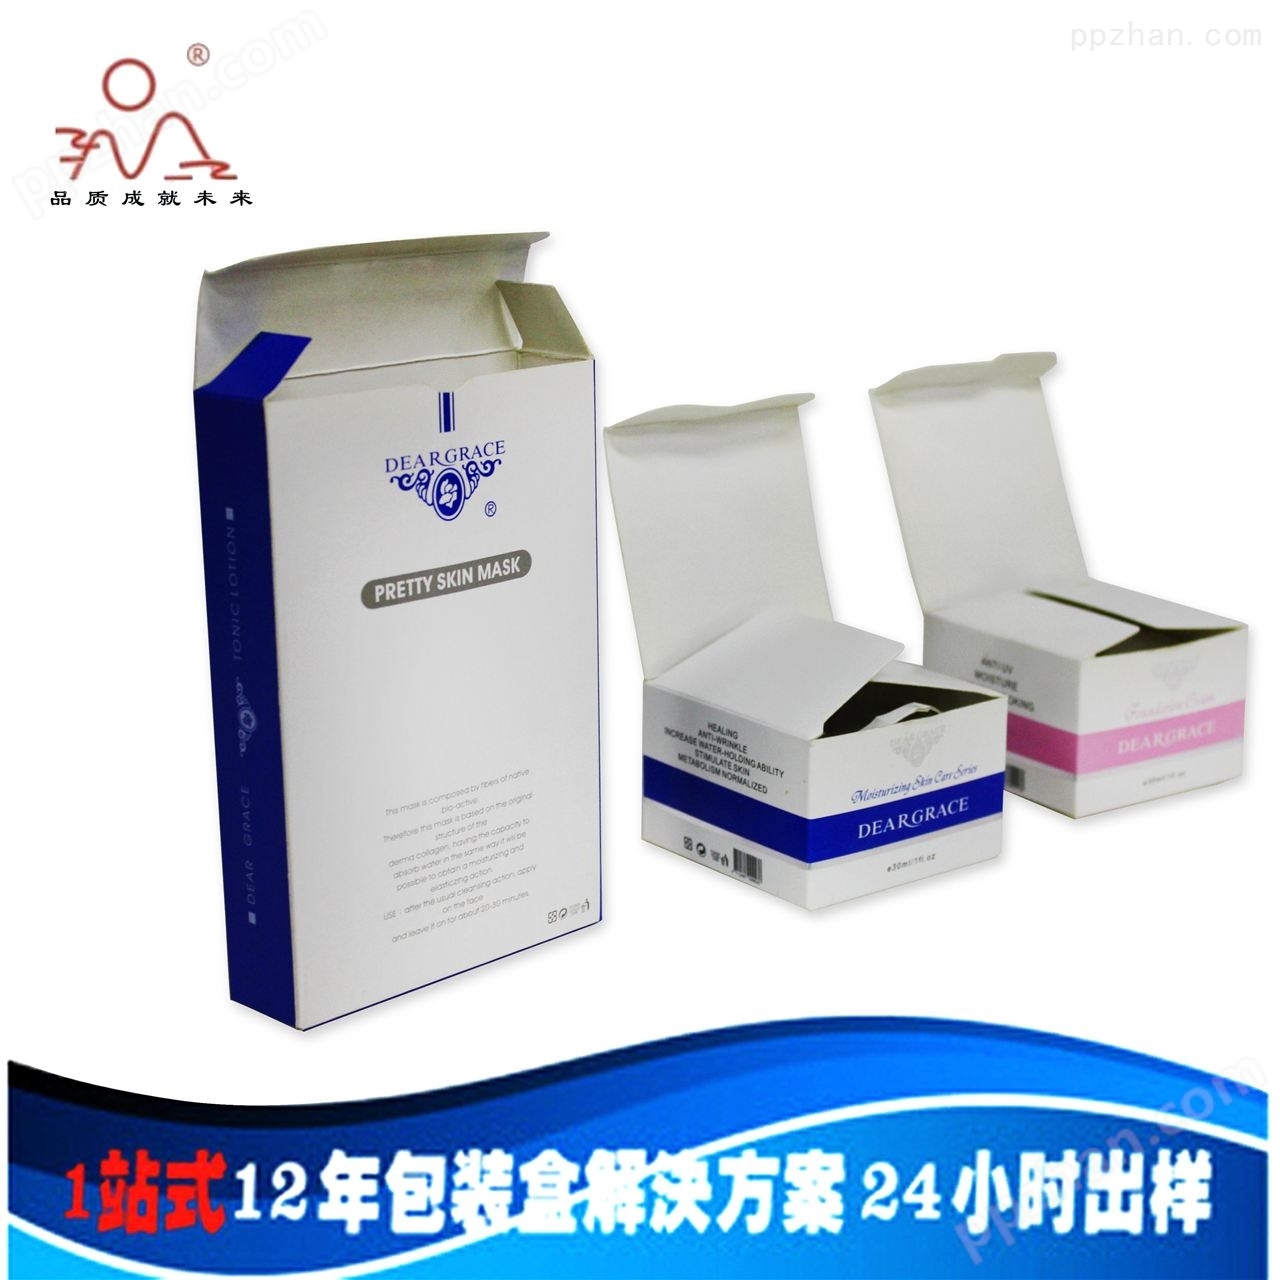 广州旭升印刷厂专业提供化妆品包装盒定制生产，化妆品盒设计印刷一站式服务